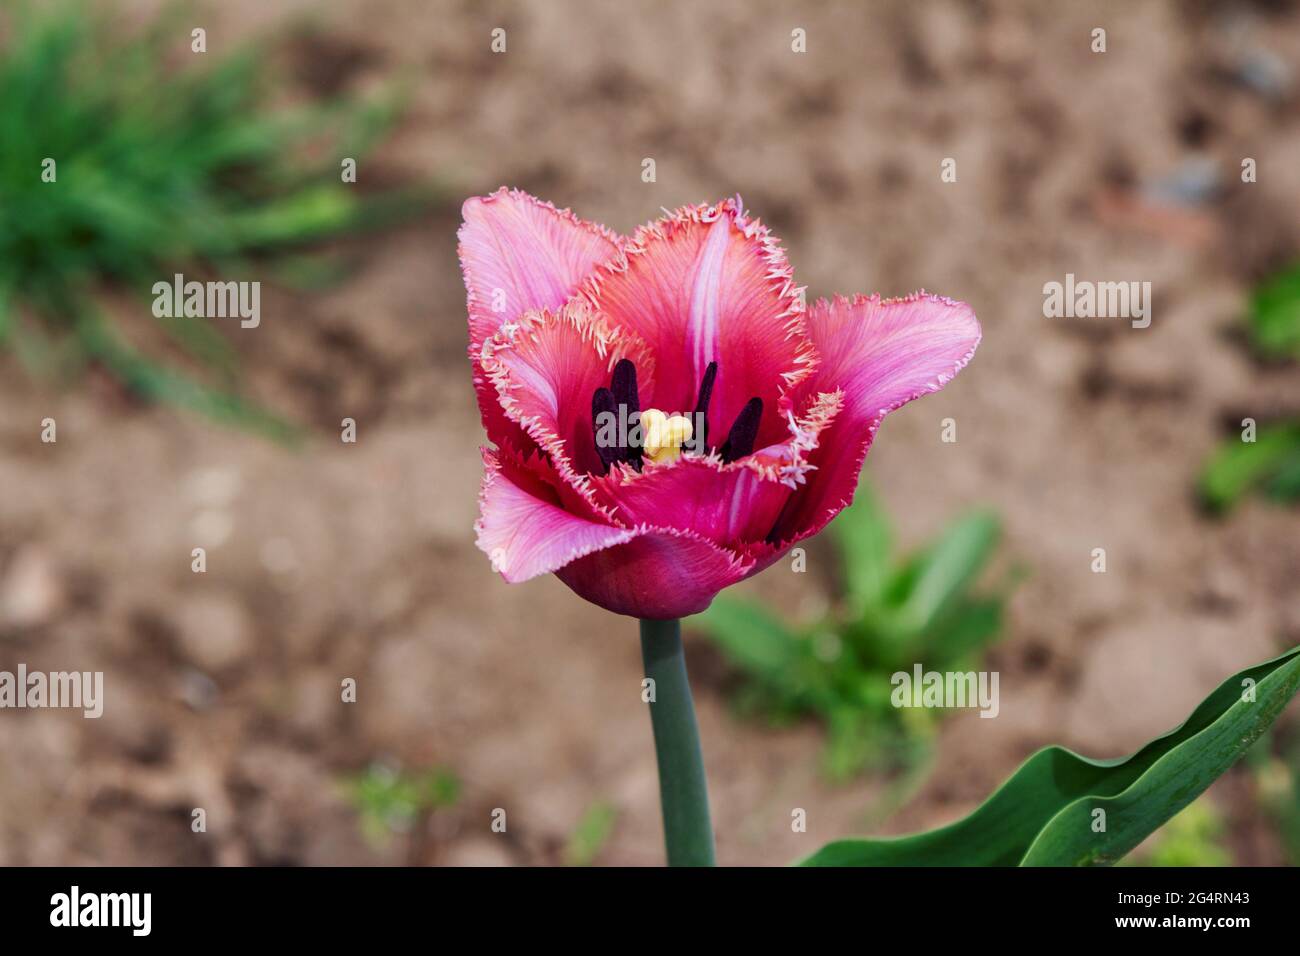 Nahaufnahme einer wunderschönen rosa umsäumten oder terry Tulpenblume, die in einem Garten wächst Stockfoto